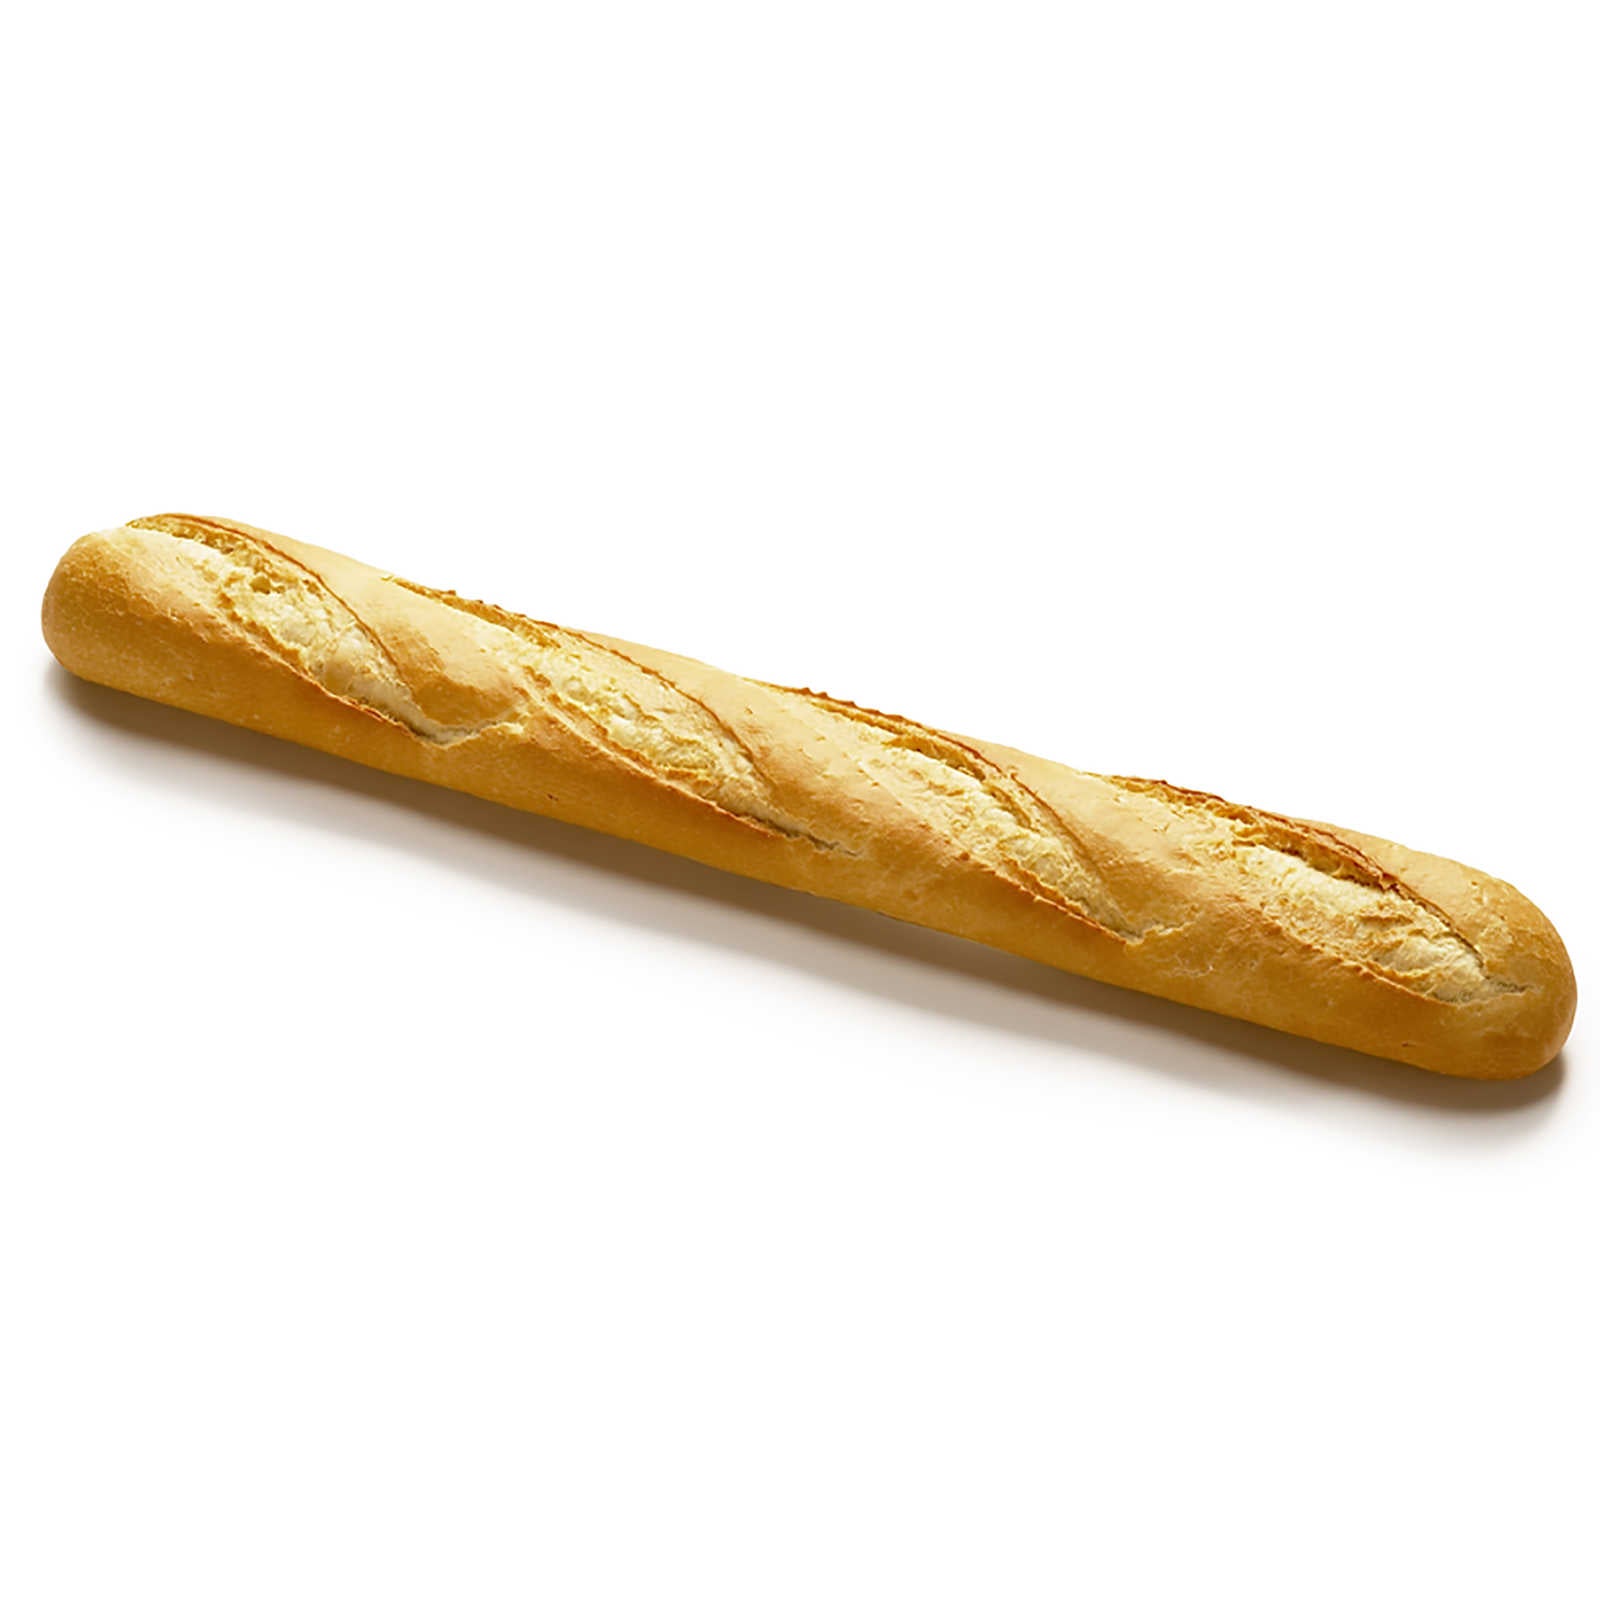 Parisian baguette